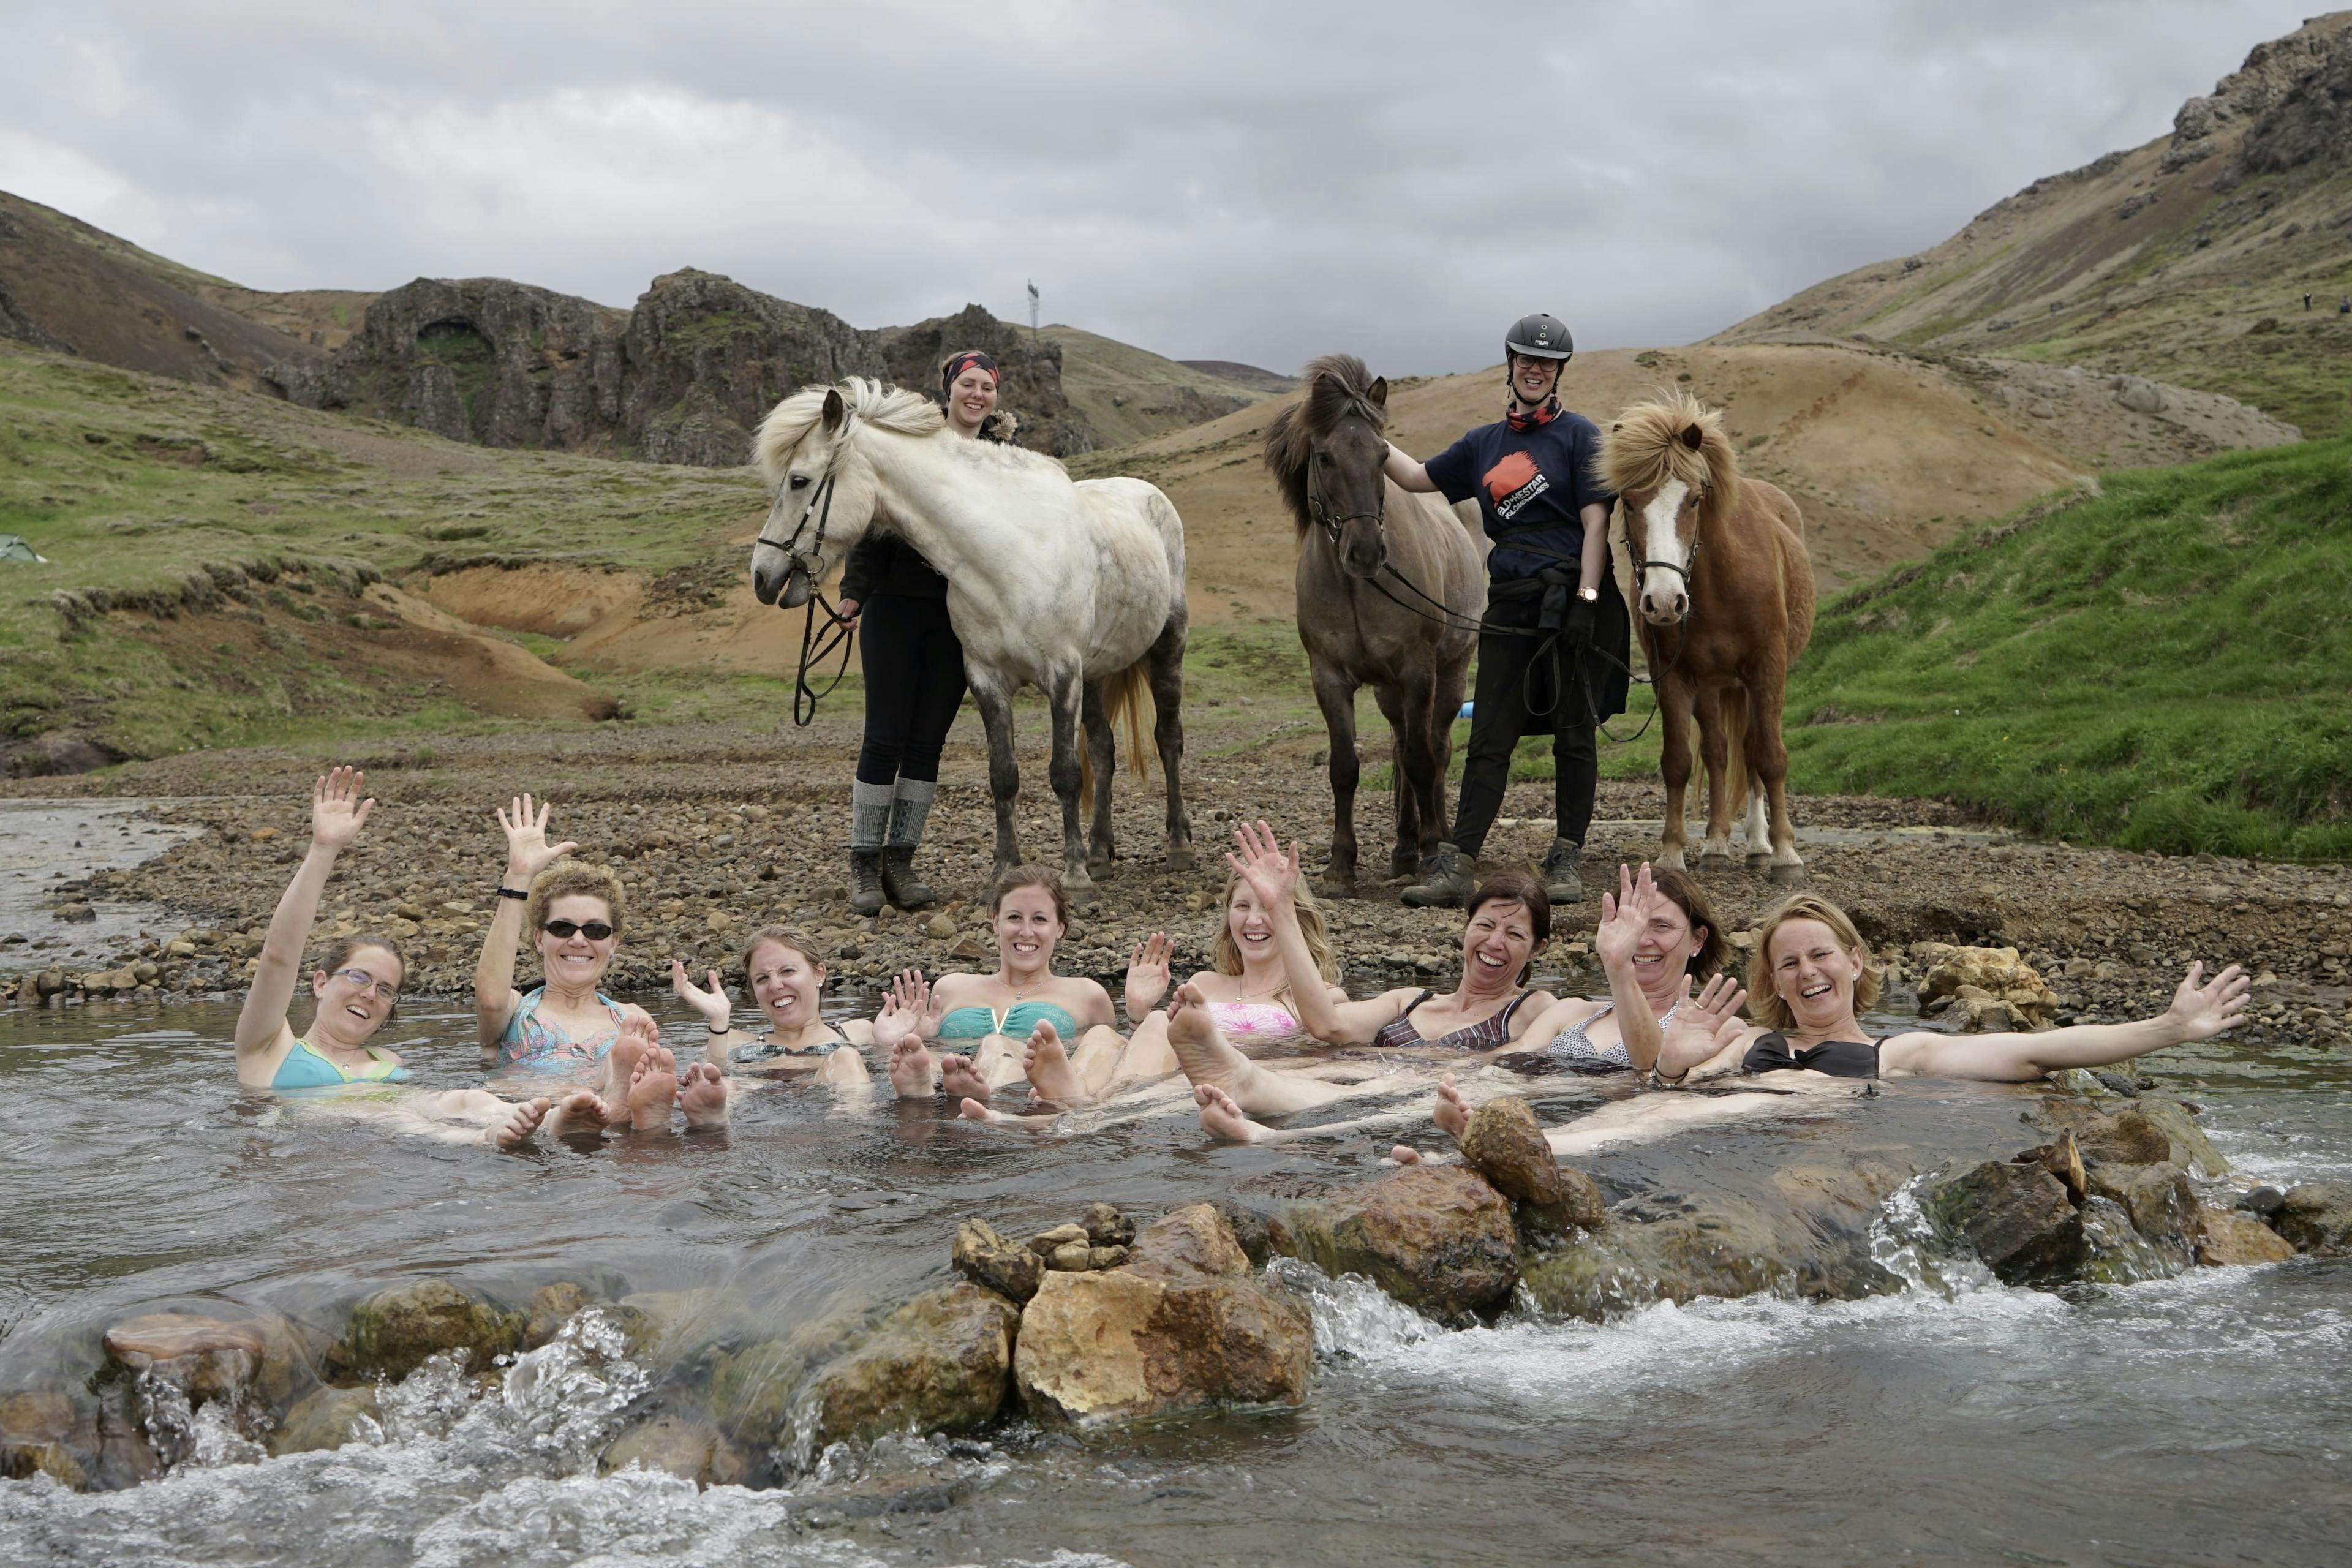 Horseback Riding & Bathing In Hot Springs Full Day Tour